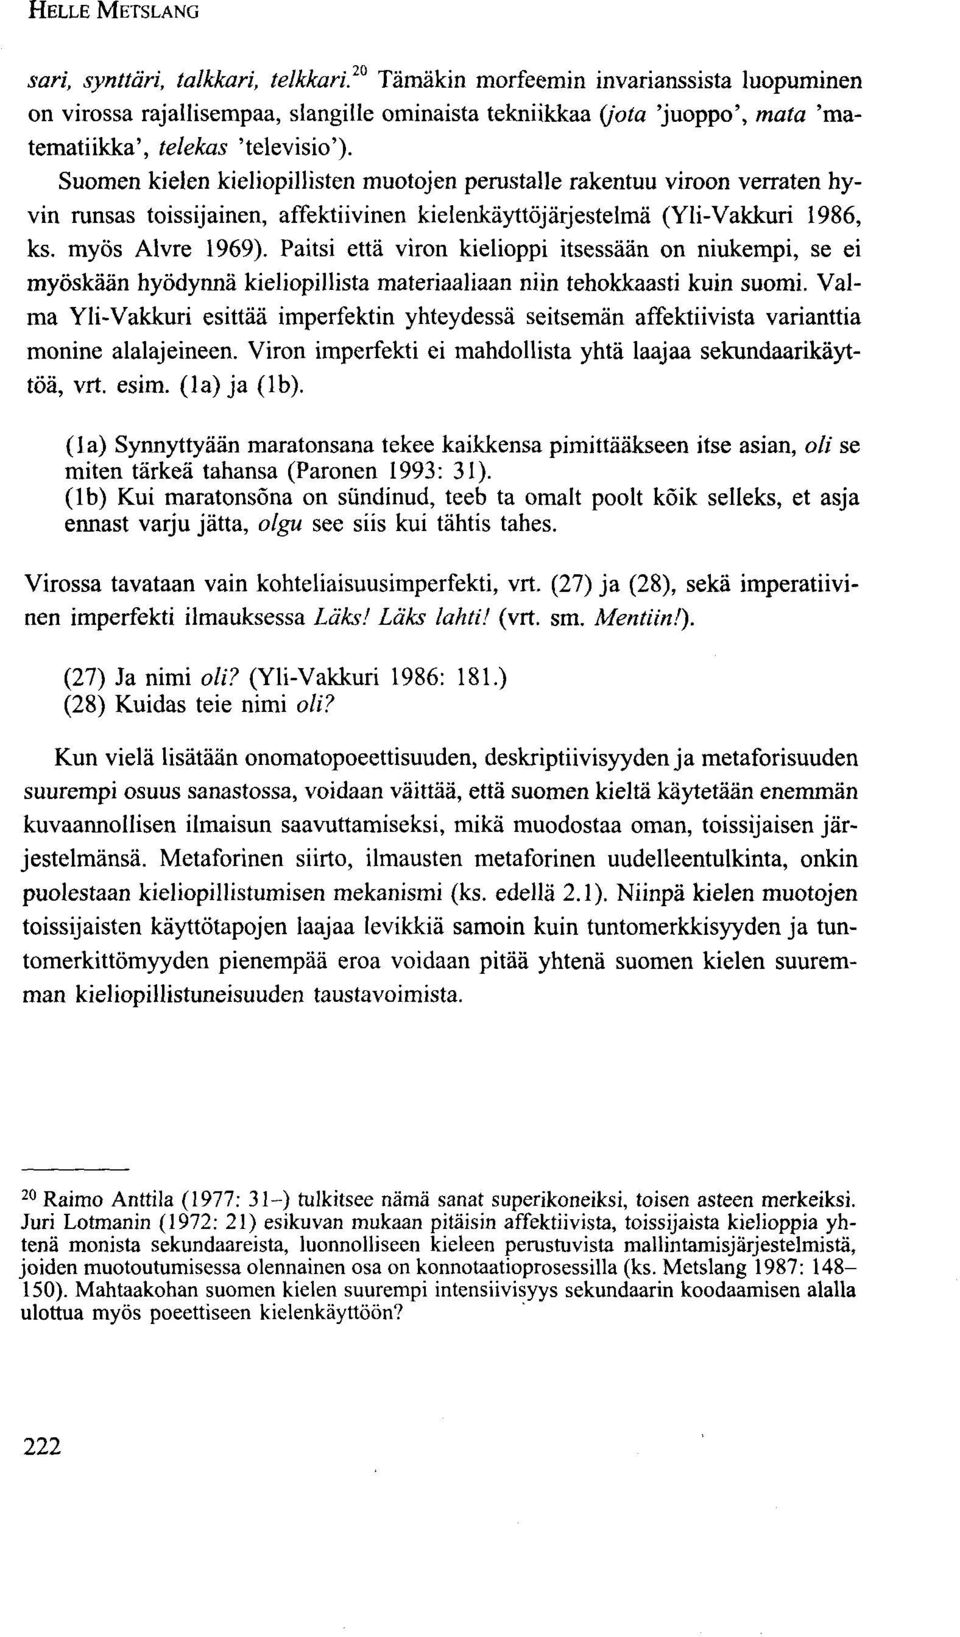 Suomen kielen kieliopillisten muotojen perustalle rakentuu viroon verraten hyvin runsas toissijainen, affektiivinen kielenkäyttöjärjestelmä (Yli-Vakkuri 1986, ks. myös Alvre 1969).